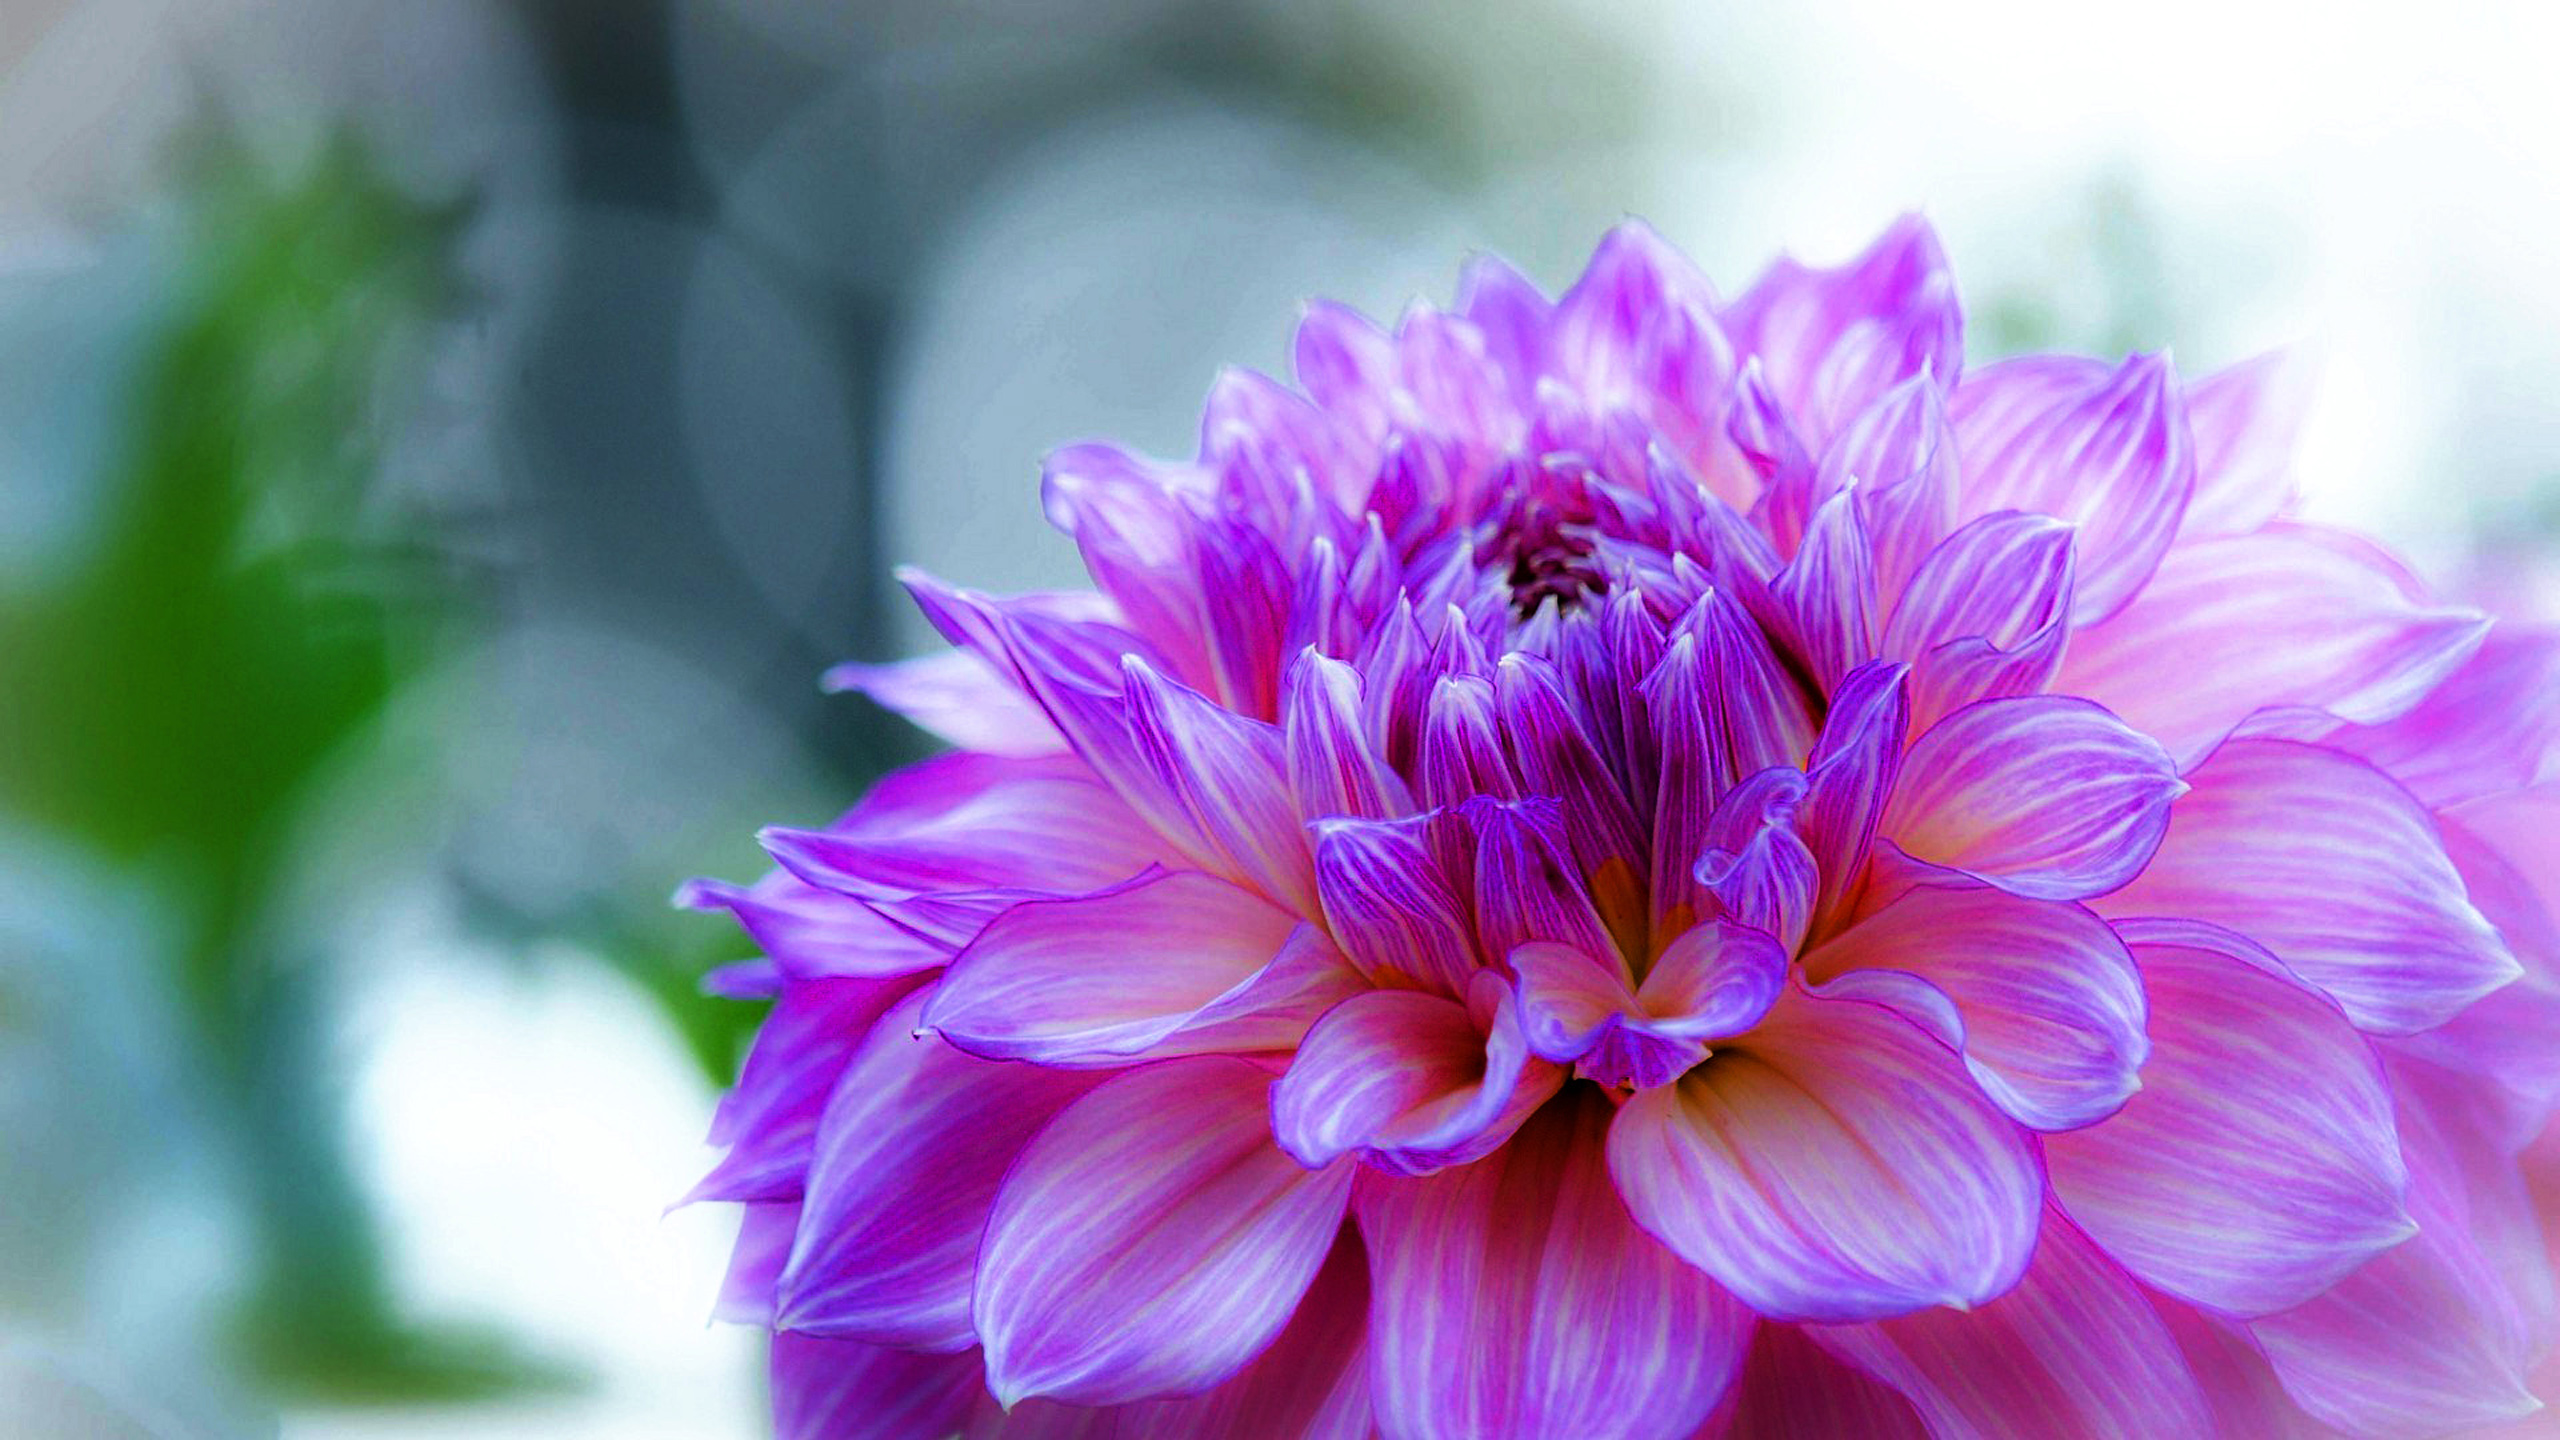 blume desktop hintergrund hd,blume,blühende pflanze,blütenblatt,rosa,violett